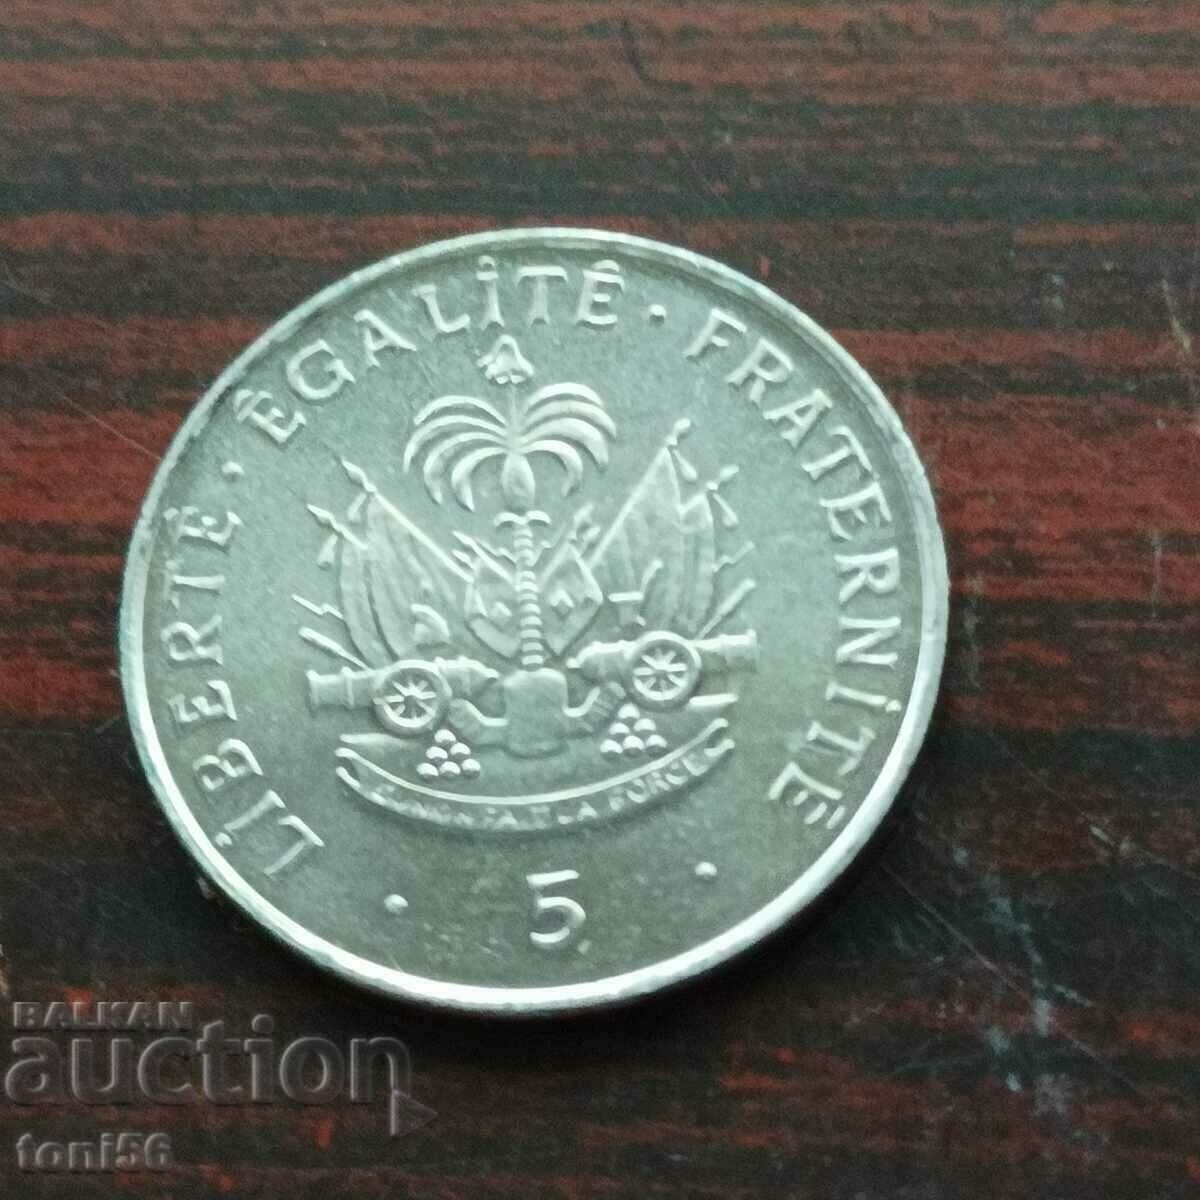 Haiti 5 centimes 1997 UNC